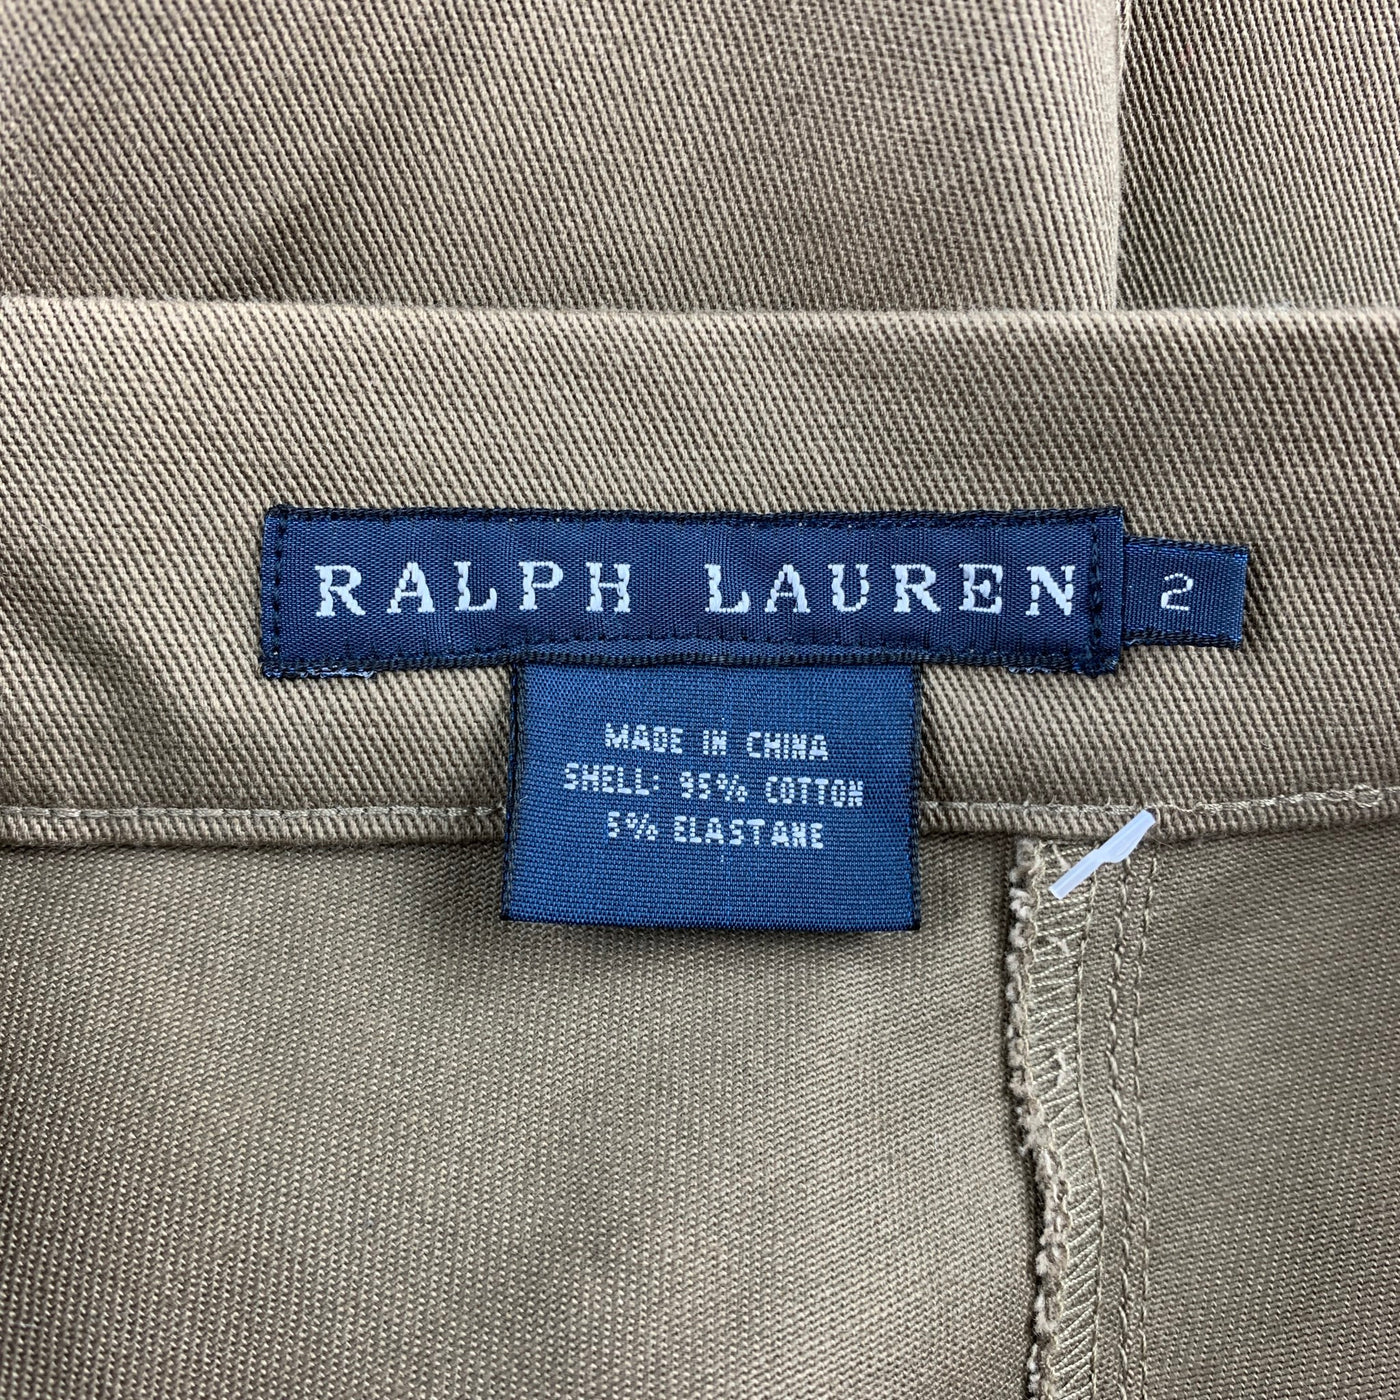 RALPH LAUREN Blue Label Size 2 Khaki Twill Cotton Leggings